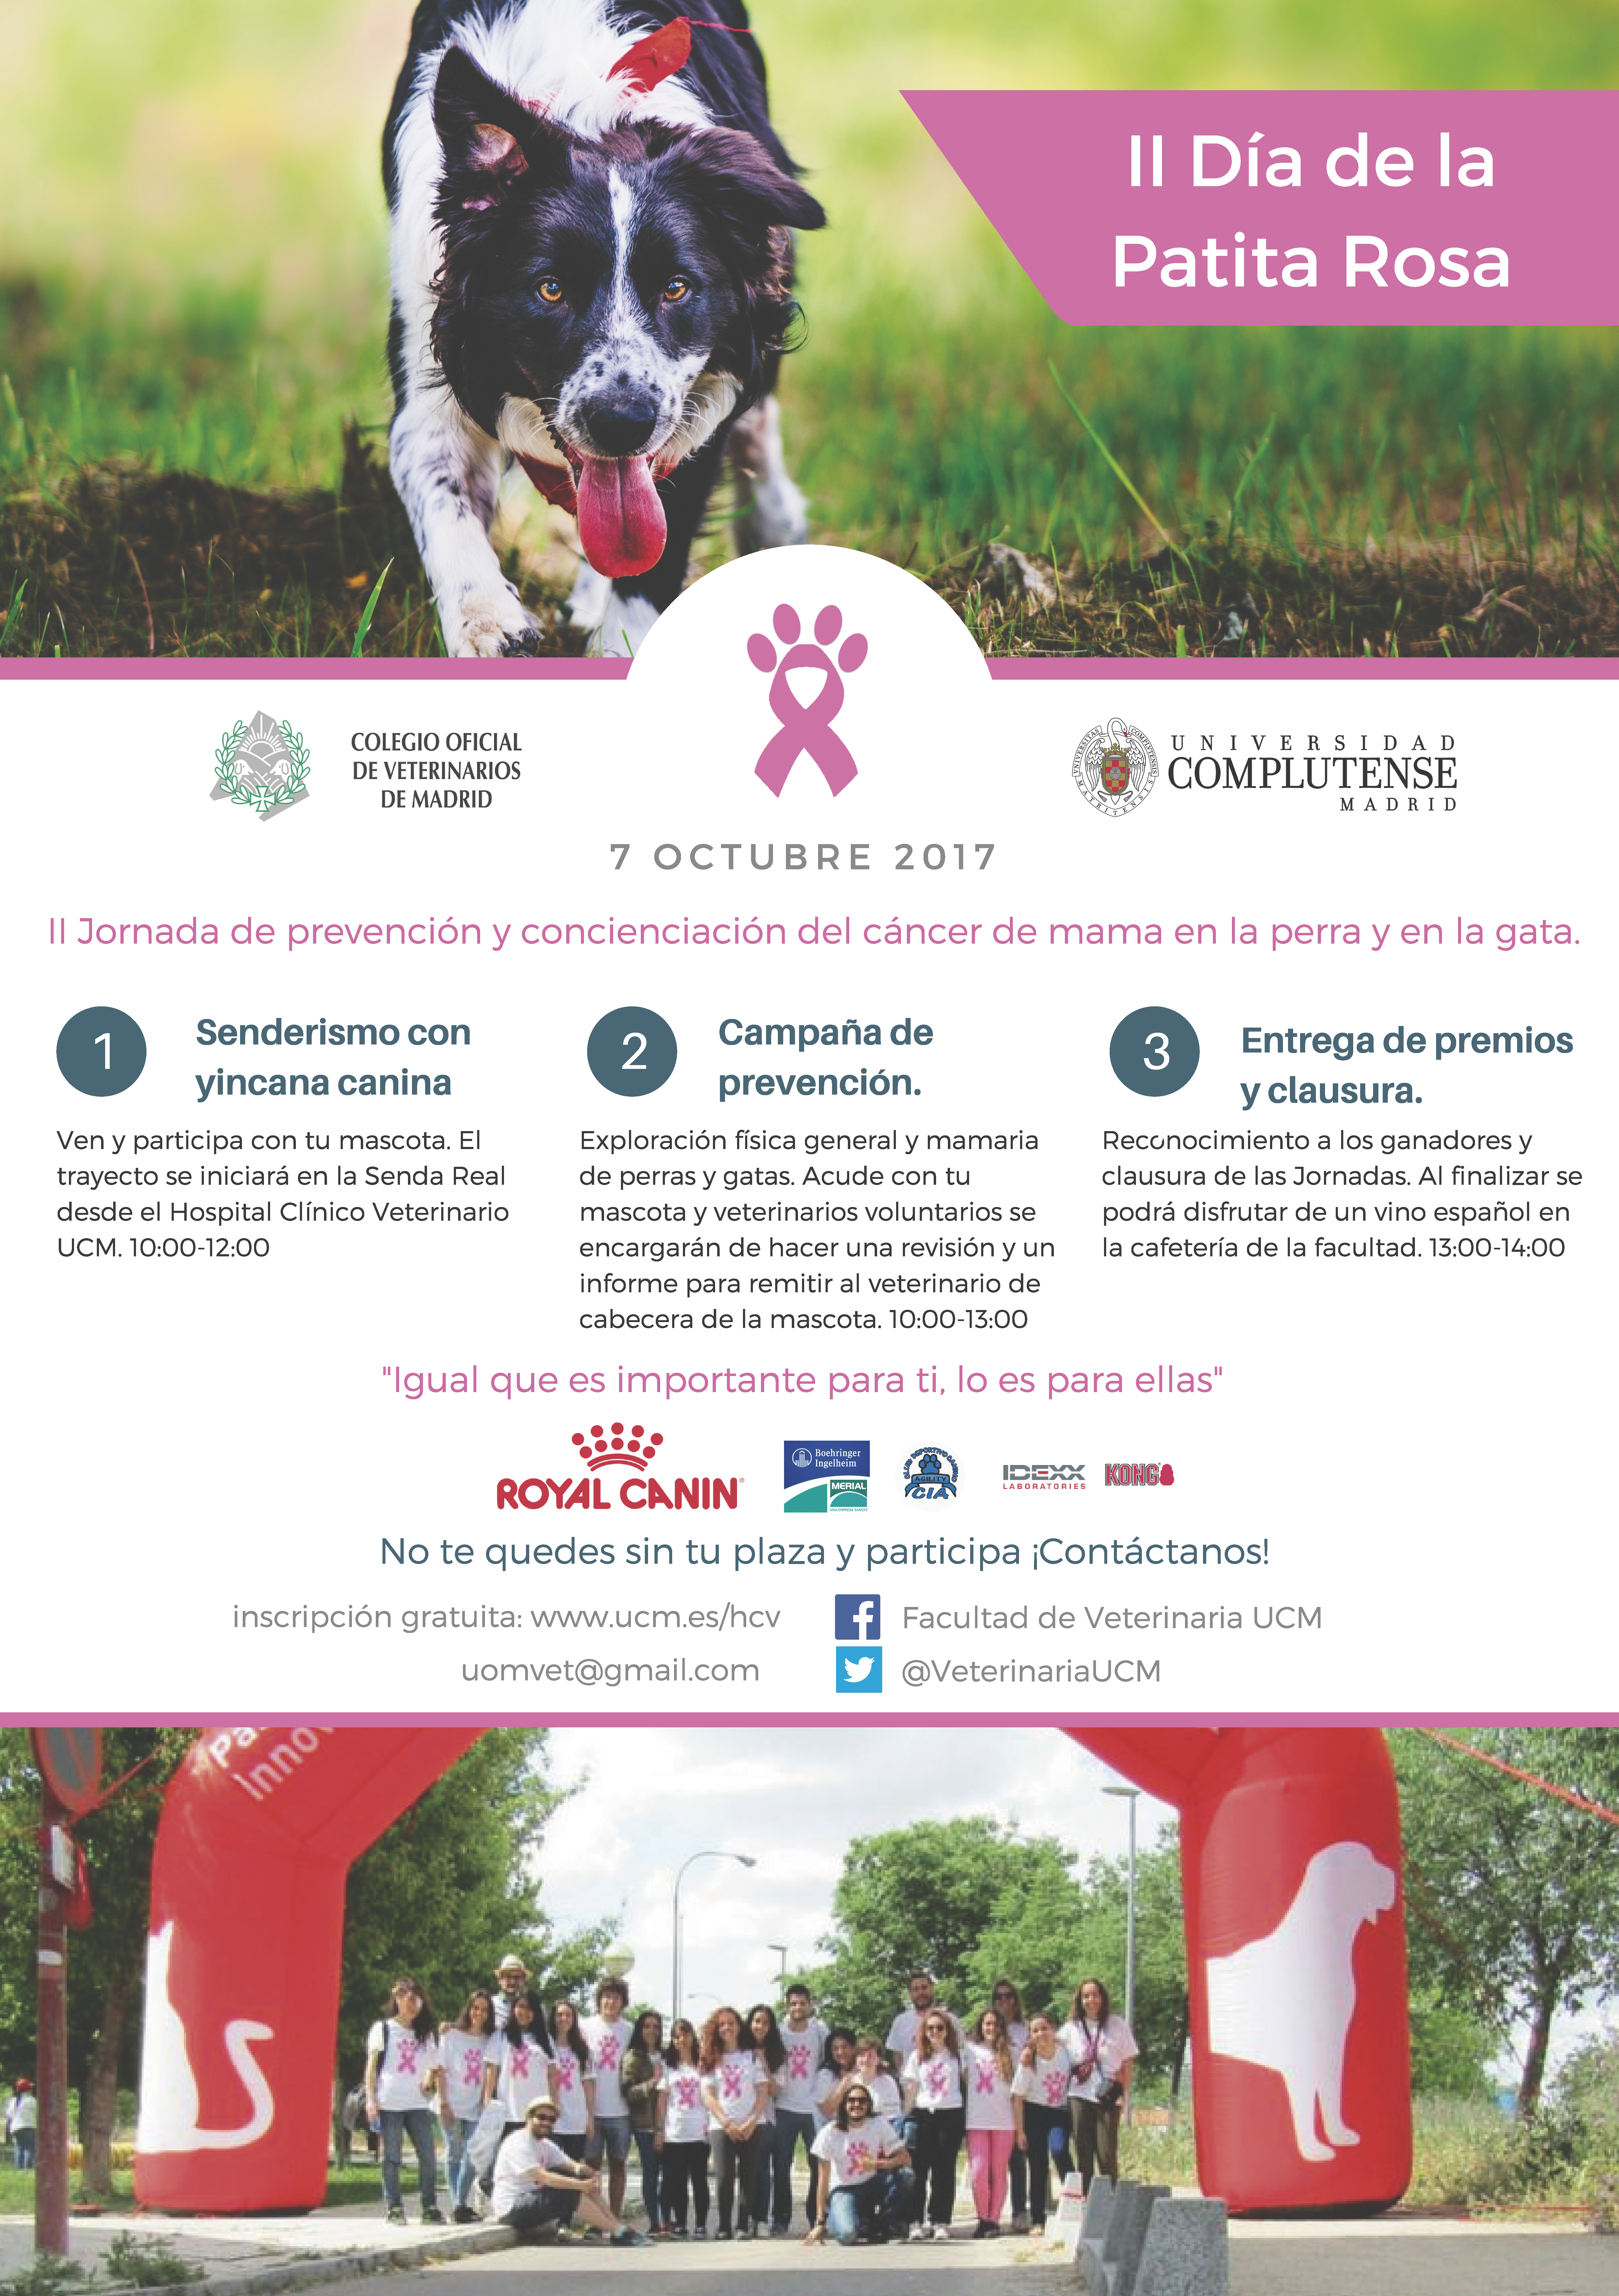 II Jornada de prevención y concienciación del cáncer de mama en la perra y en la gata